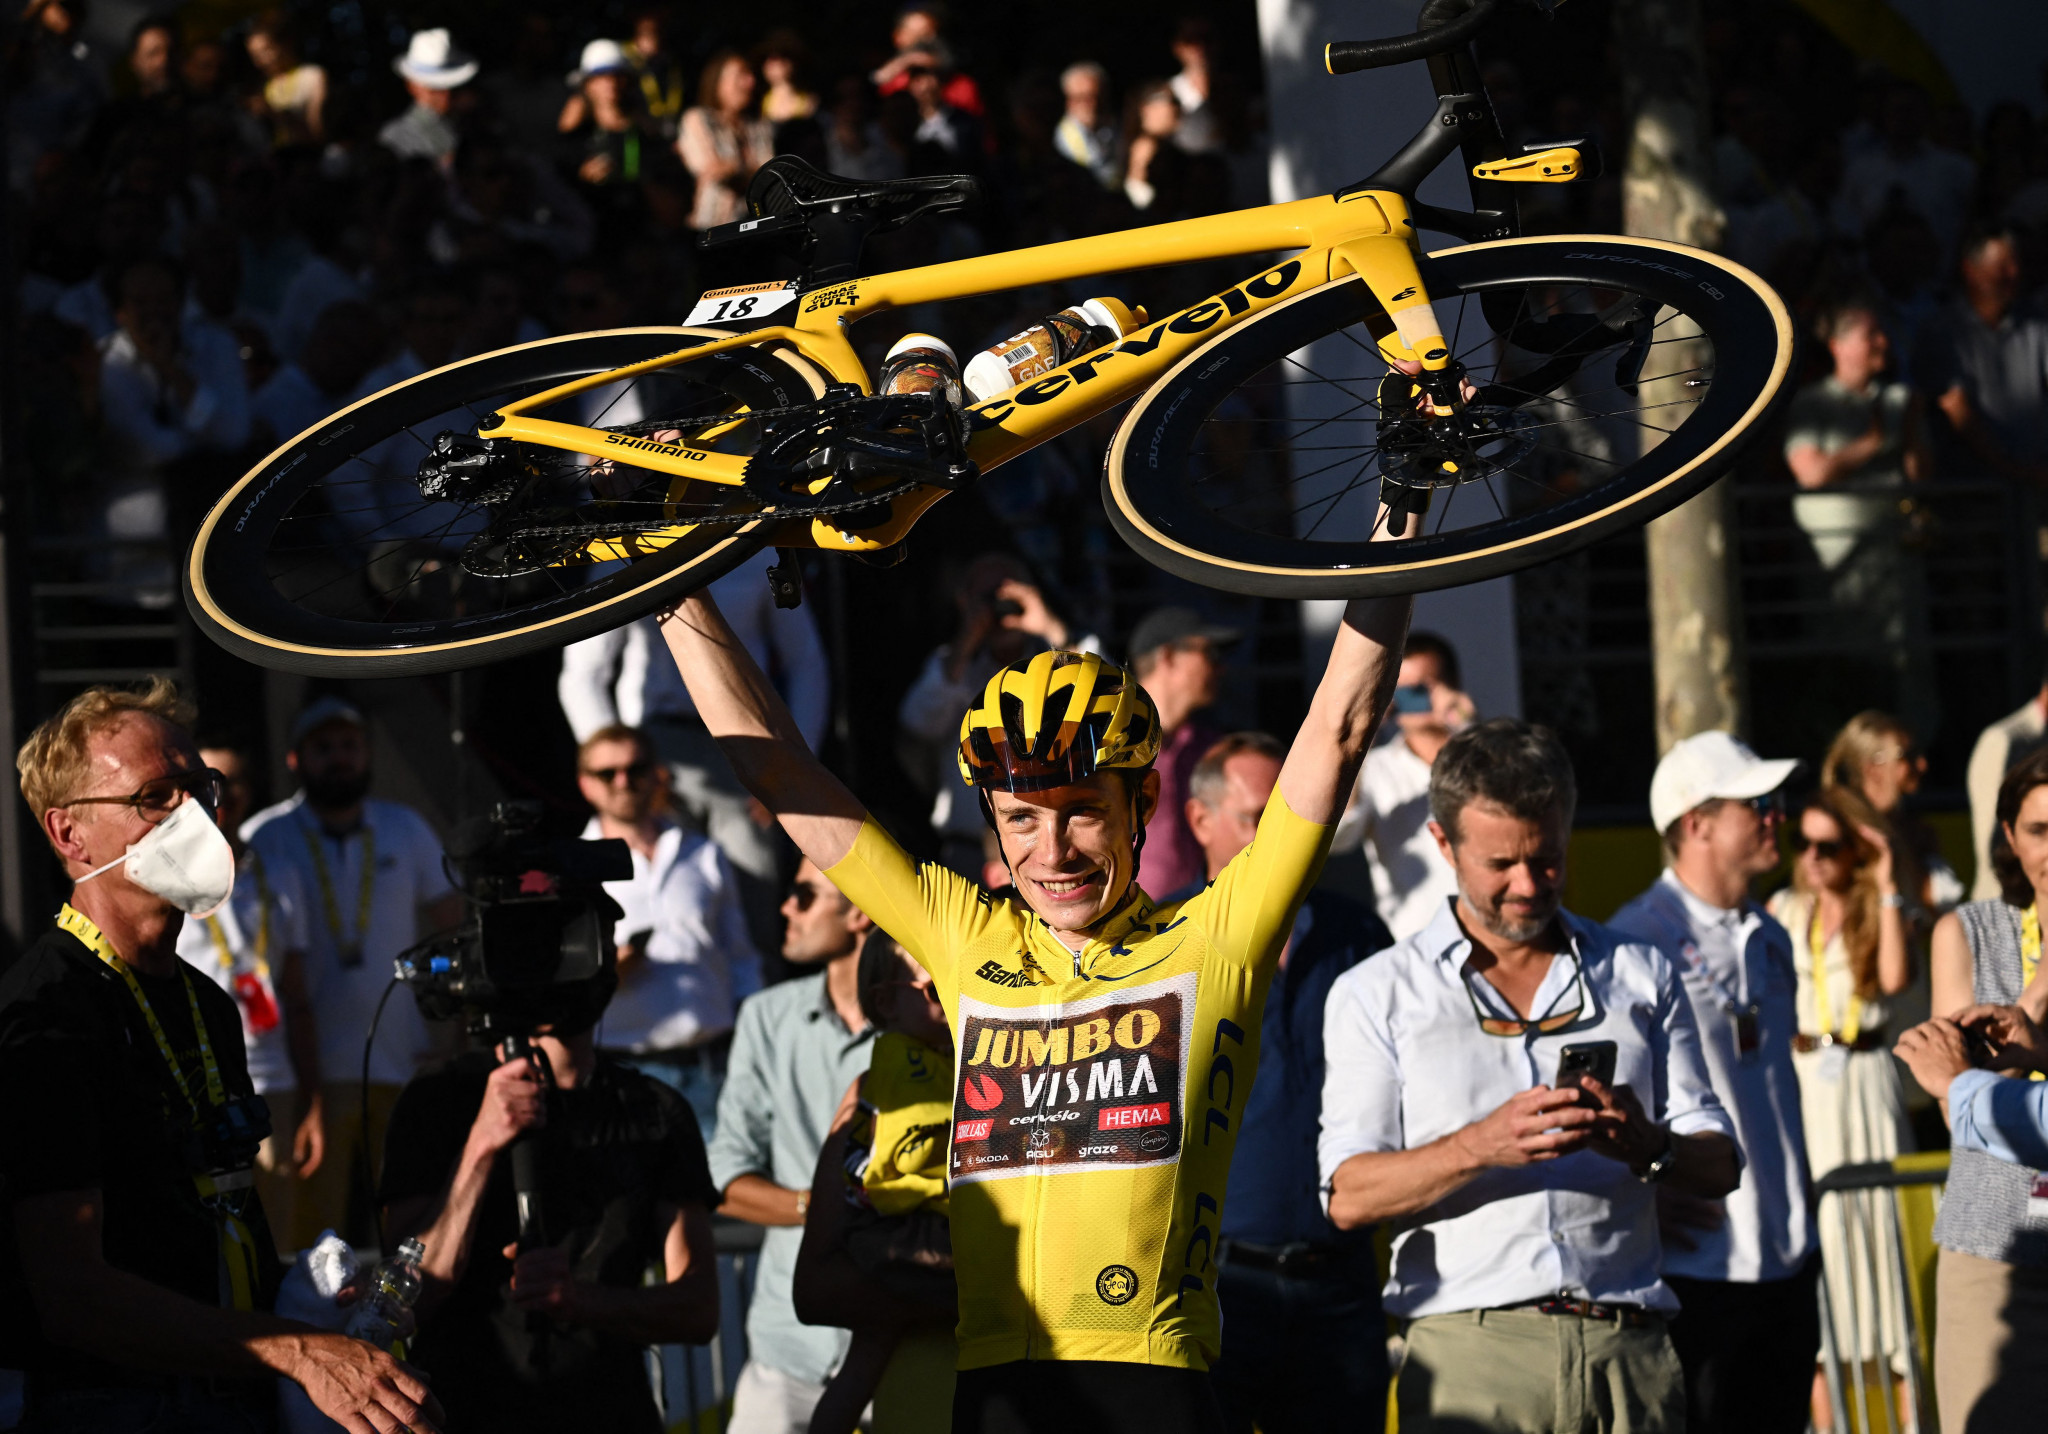 Jonas Vingegaard is the Tour de France champion ©Getty Images